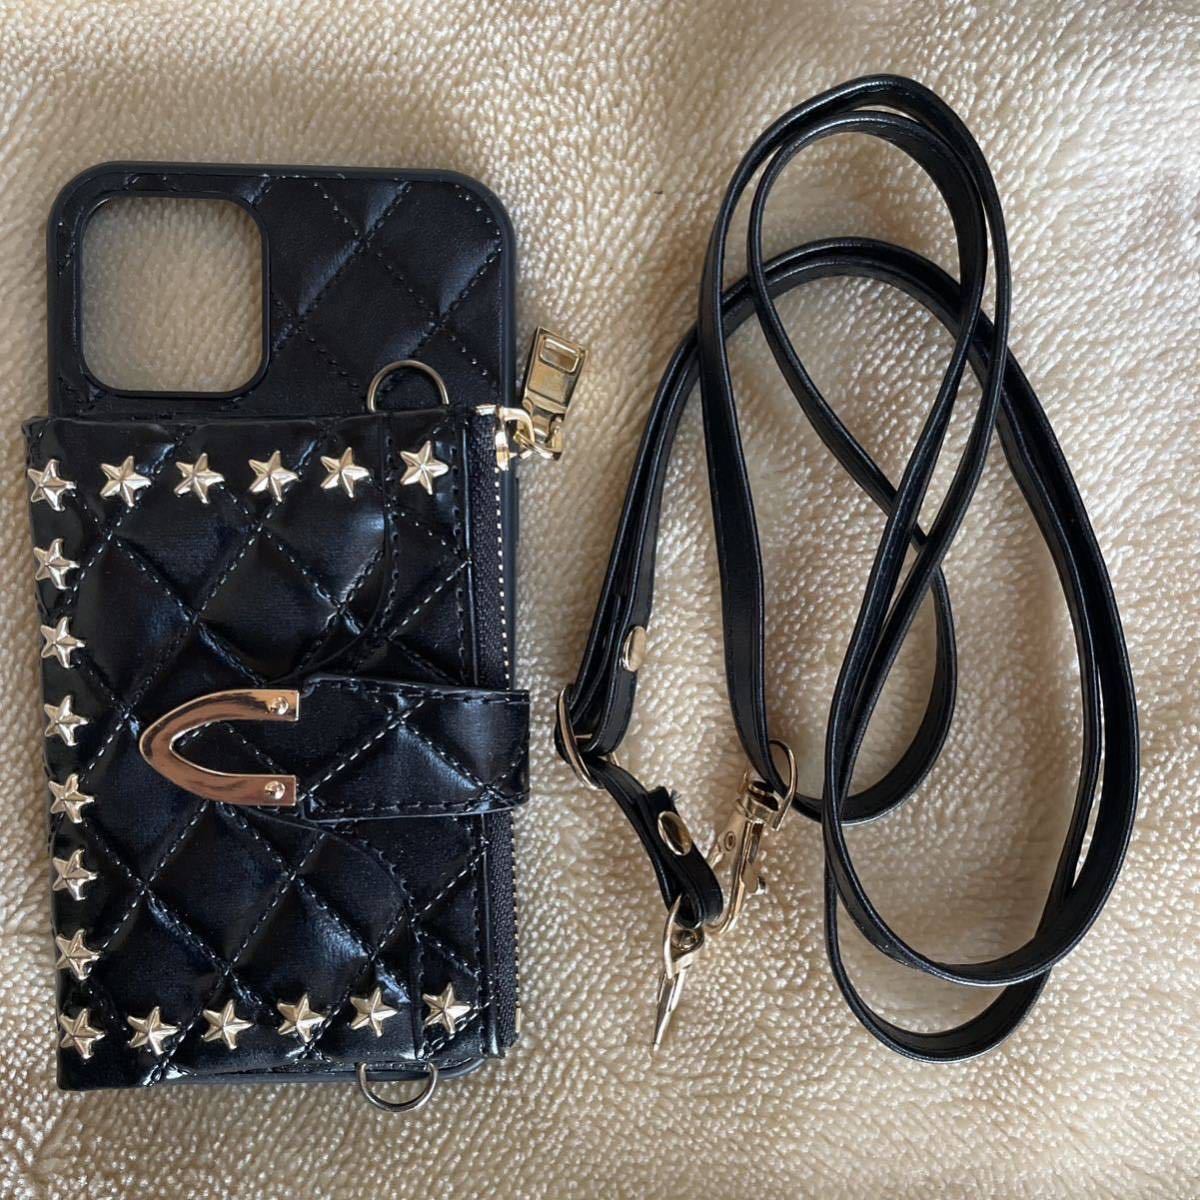 スタッズ 星 ブラック カード クレジット 収納 財布 可愛い ストラップ カバー 黒 ケース Apple スマホ 携帯 バッグ iPhone12 Pro iPhone12_画像3